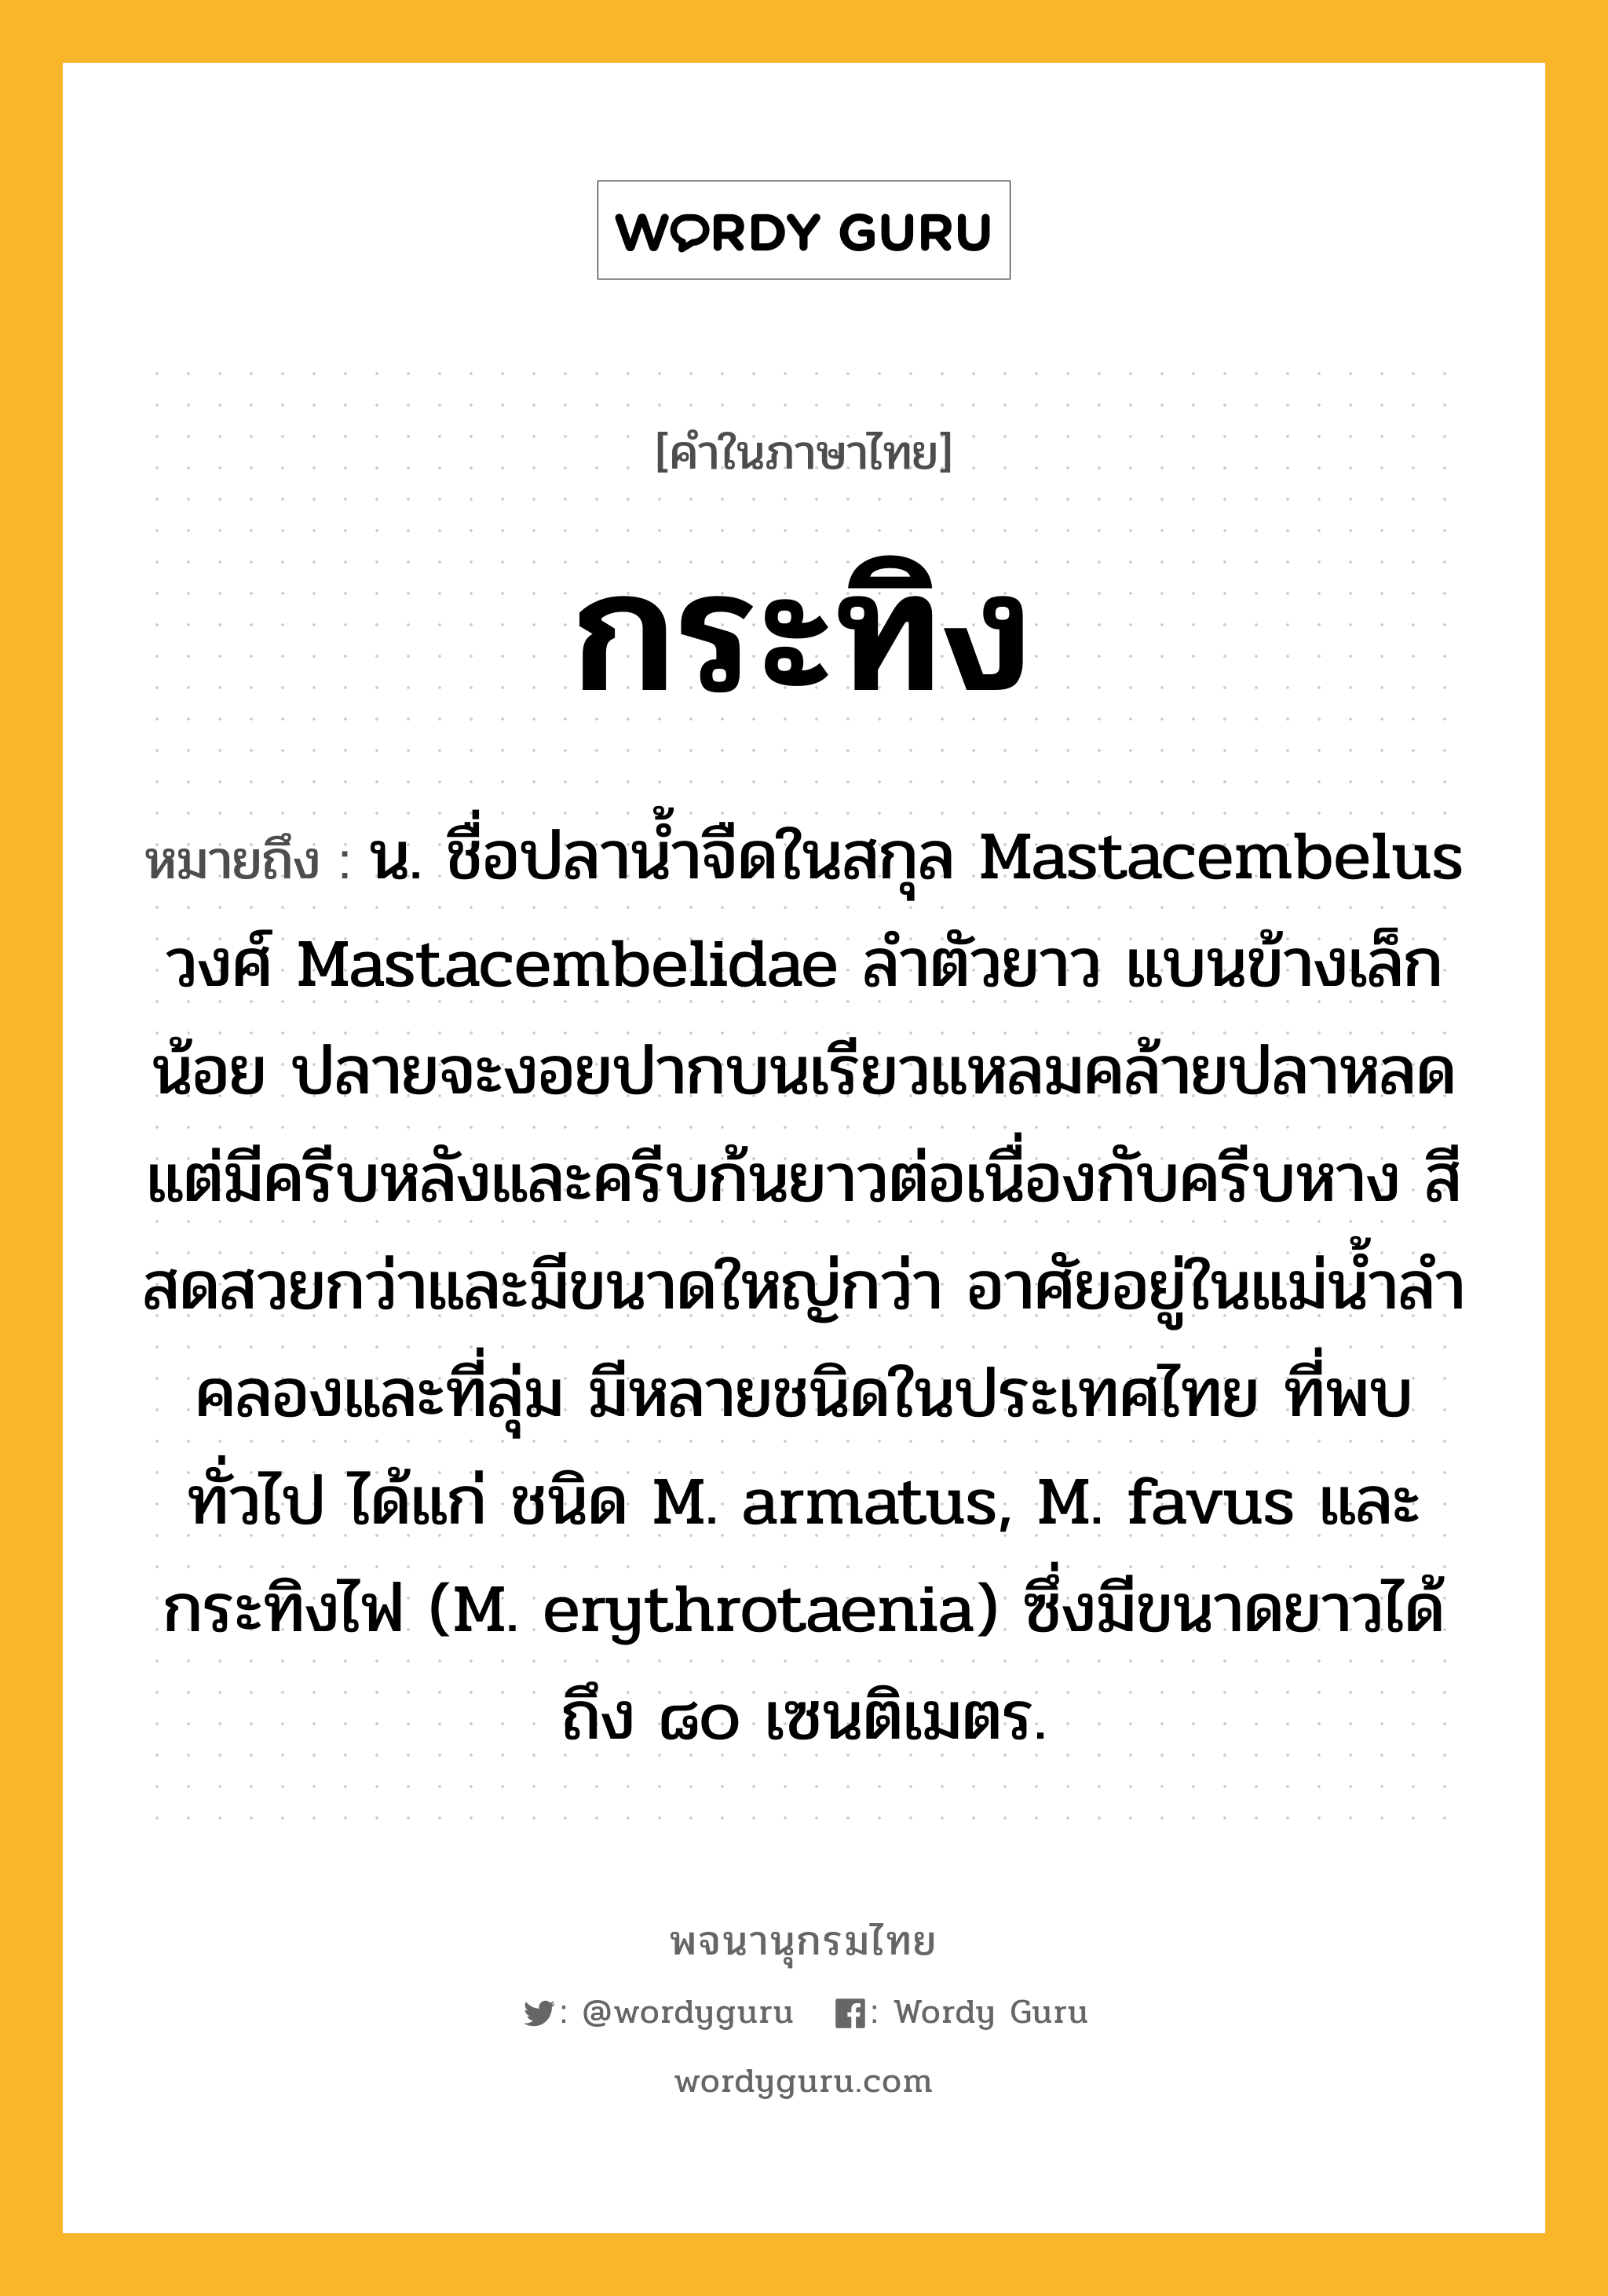 กระทิง ความหมาย หมายถึงอะไร?, คำในภาษาไทย กระทิง หมายถึง น. ชื่อปลานํ้าจืดในสกุล Mastacembelus วงศ์ Mastacembelidae ลําตัวยาว แบนข้างเล็กน้อย ปลายจะงอยปากบนเรียวแหลมคล้ายปลาหลด แต่มีครีบหลังและครีบก้นยาวต่อเนื่องกับครีบหาง สีสดสวยกว่าและมีขนาดใหญ่กว่า อาศัยอยู่ในแม่นํ้าลําคลองและที่ลุ่ม มีหลายชนิดในประเทศไทย ที่พบทั่วไป ได้แก่ ชนิด M. armatus, M. favus และกระทิงไฟ (M. erythrotaenia) ซึ่งมีขนาดยาวได้ถึง ๘๐ เซนติเมตร.